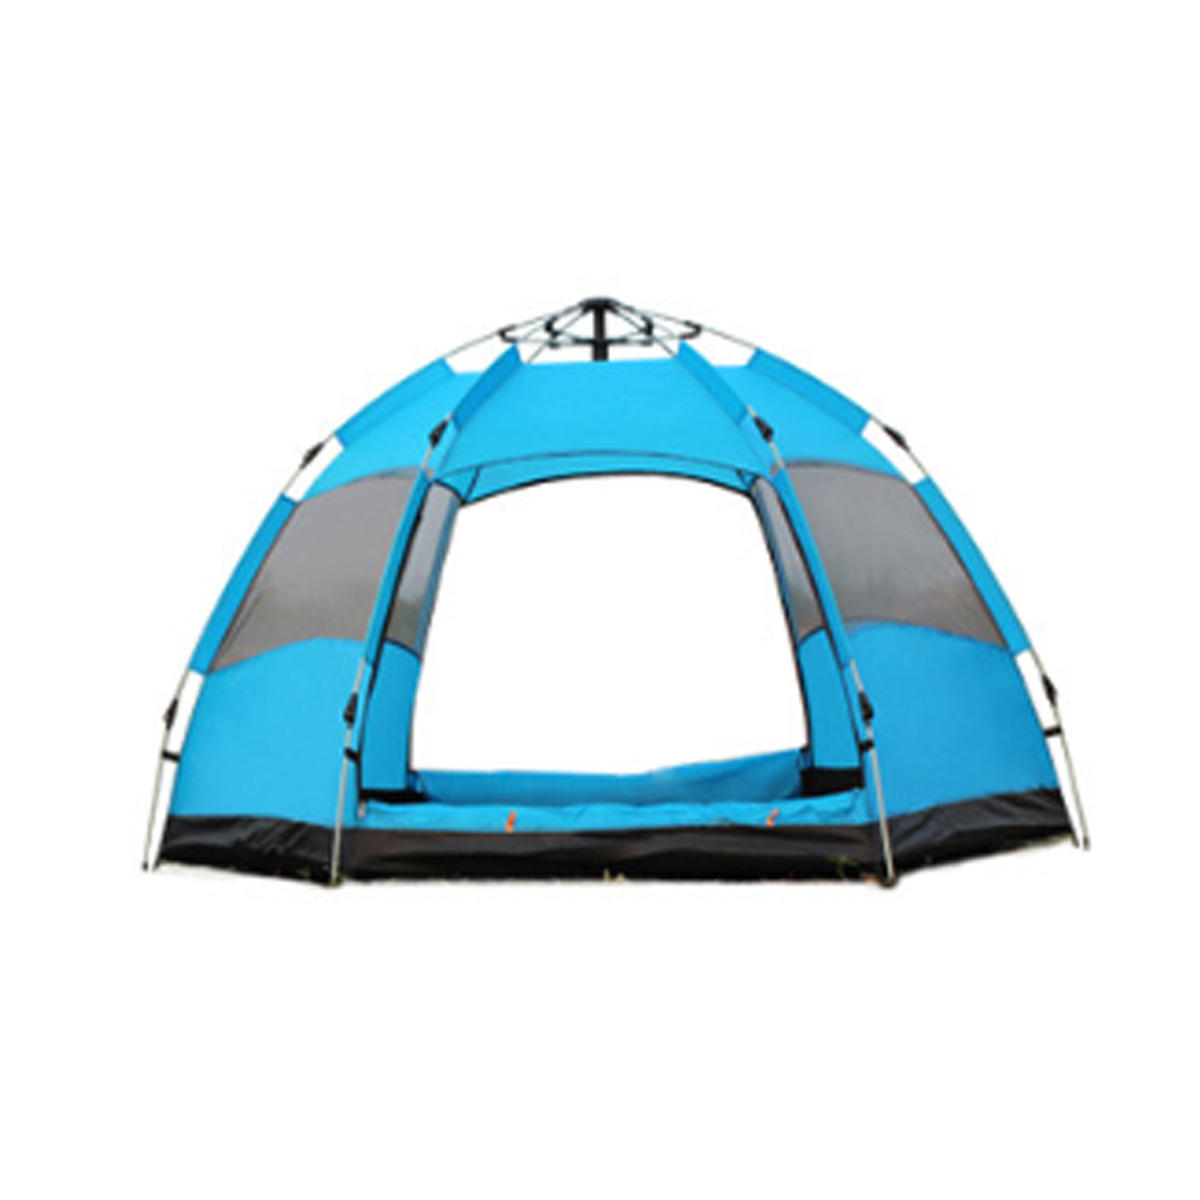 3-5人用の完全自動テント、防水性、クイックオープン、アウトドアファミリーキャンプ、ハイキング、釣り、日除け - オレンジ/グリーン/ブルー。